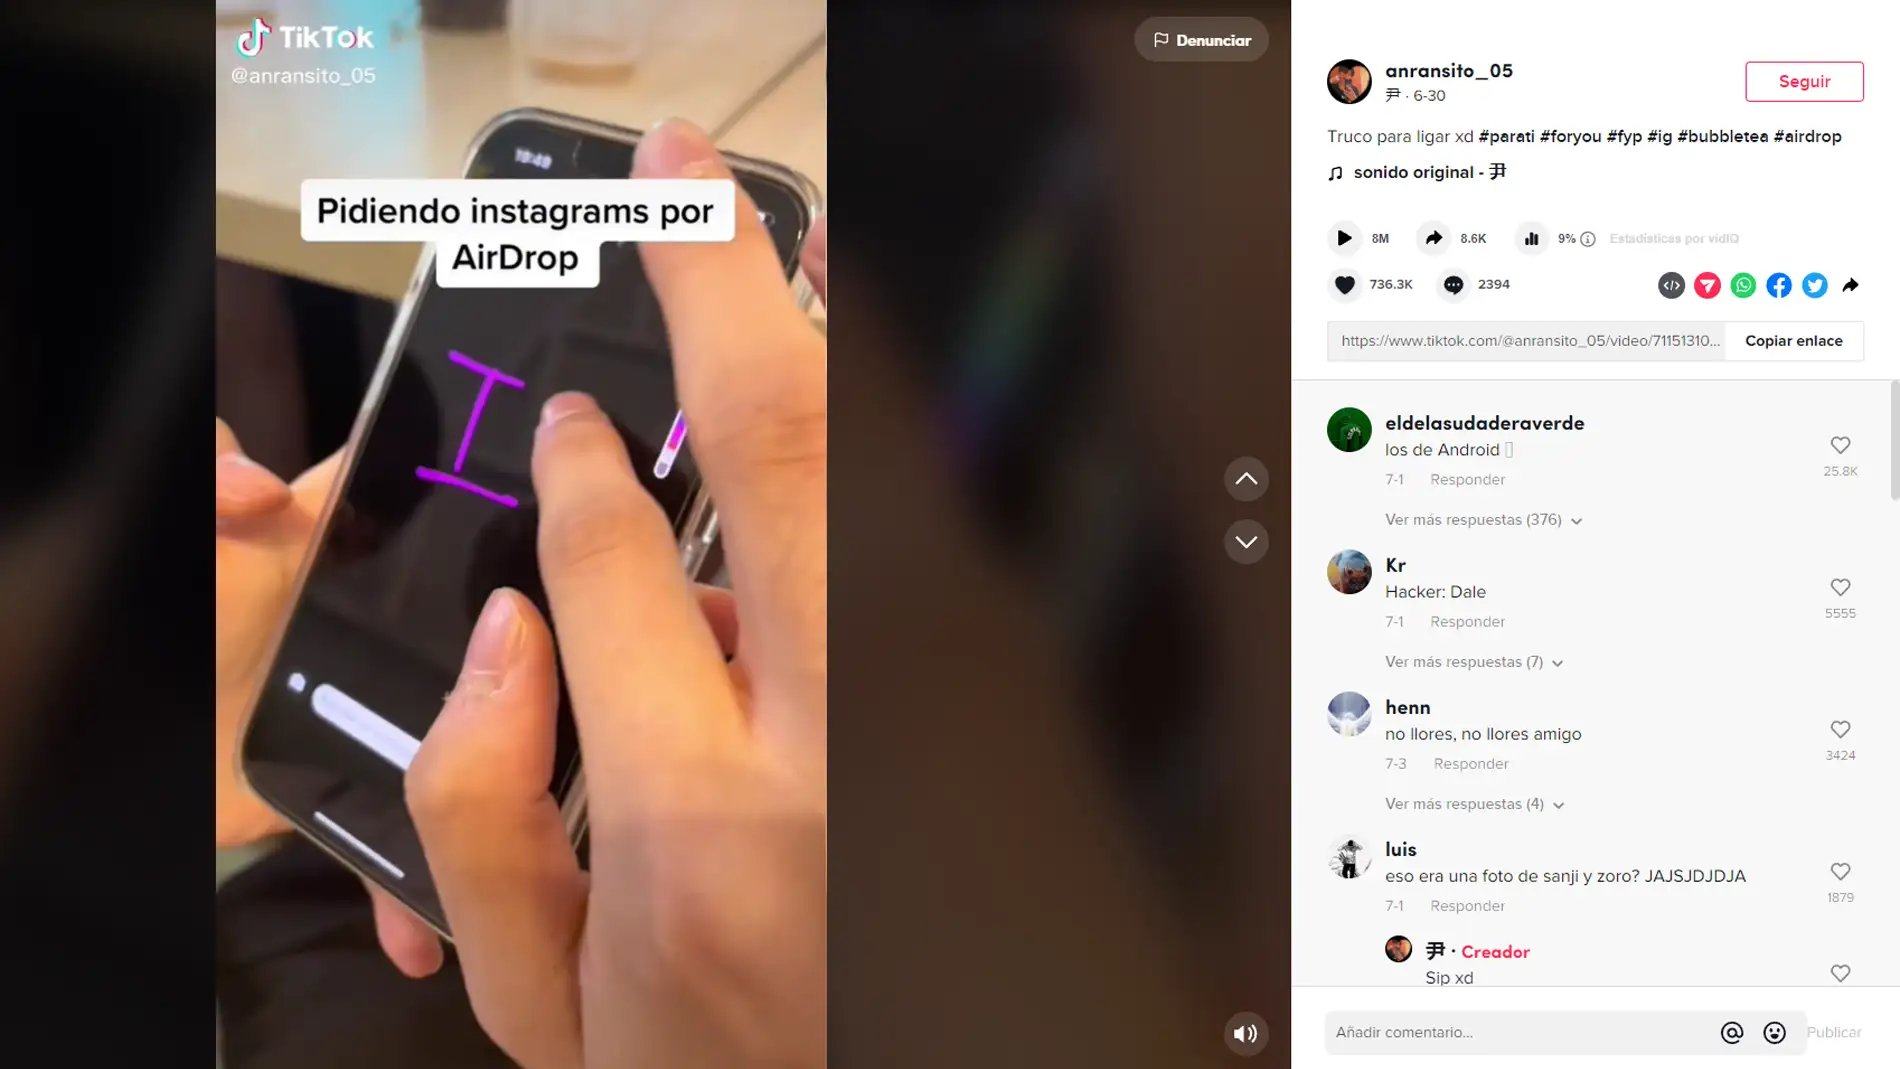 Pedir cuentas de Instagram a través de AirDrop: El nuevo método para ligar y que lo está petando en Tik Tok